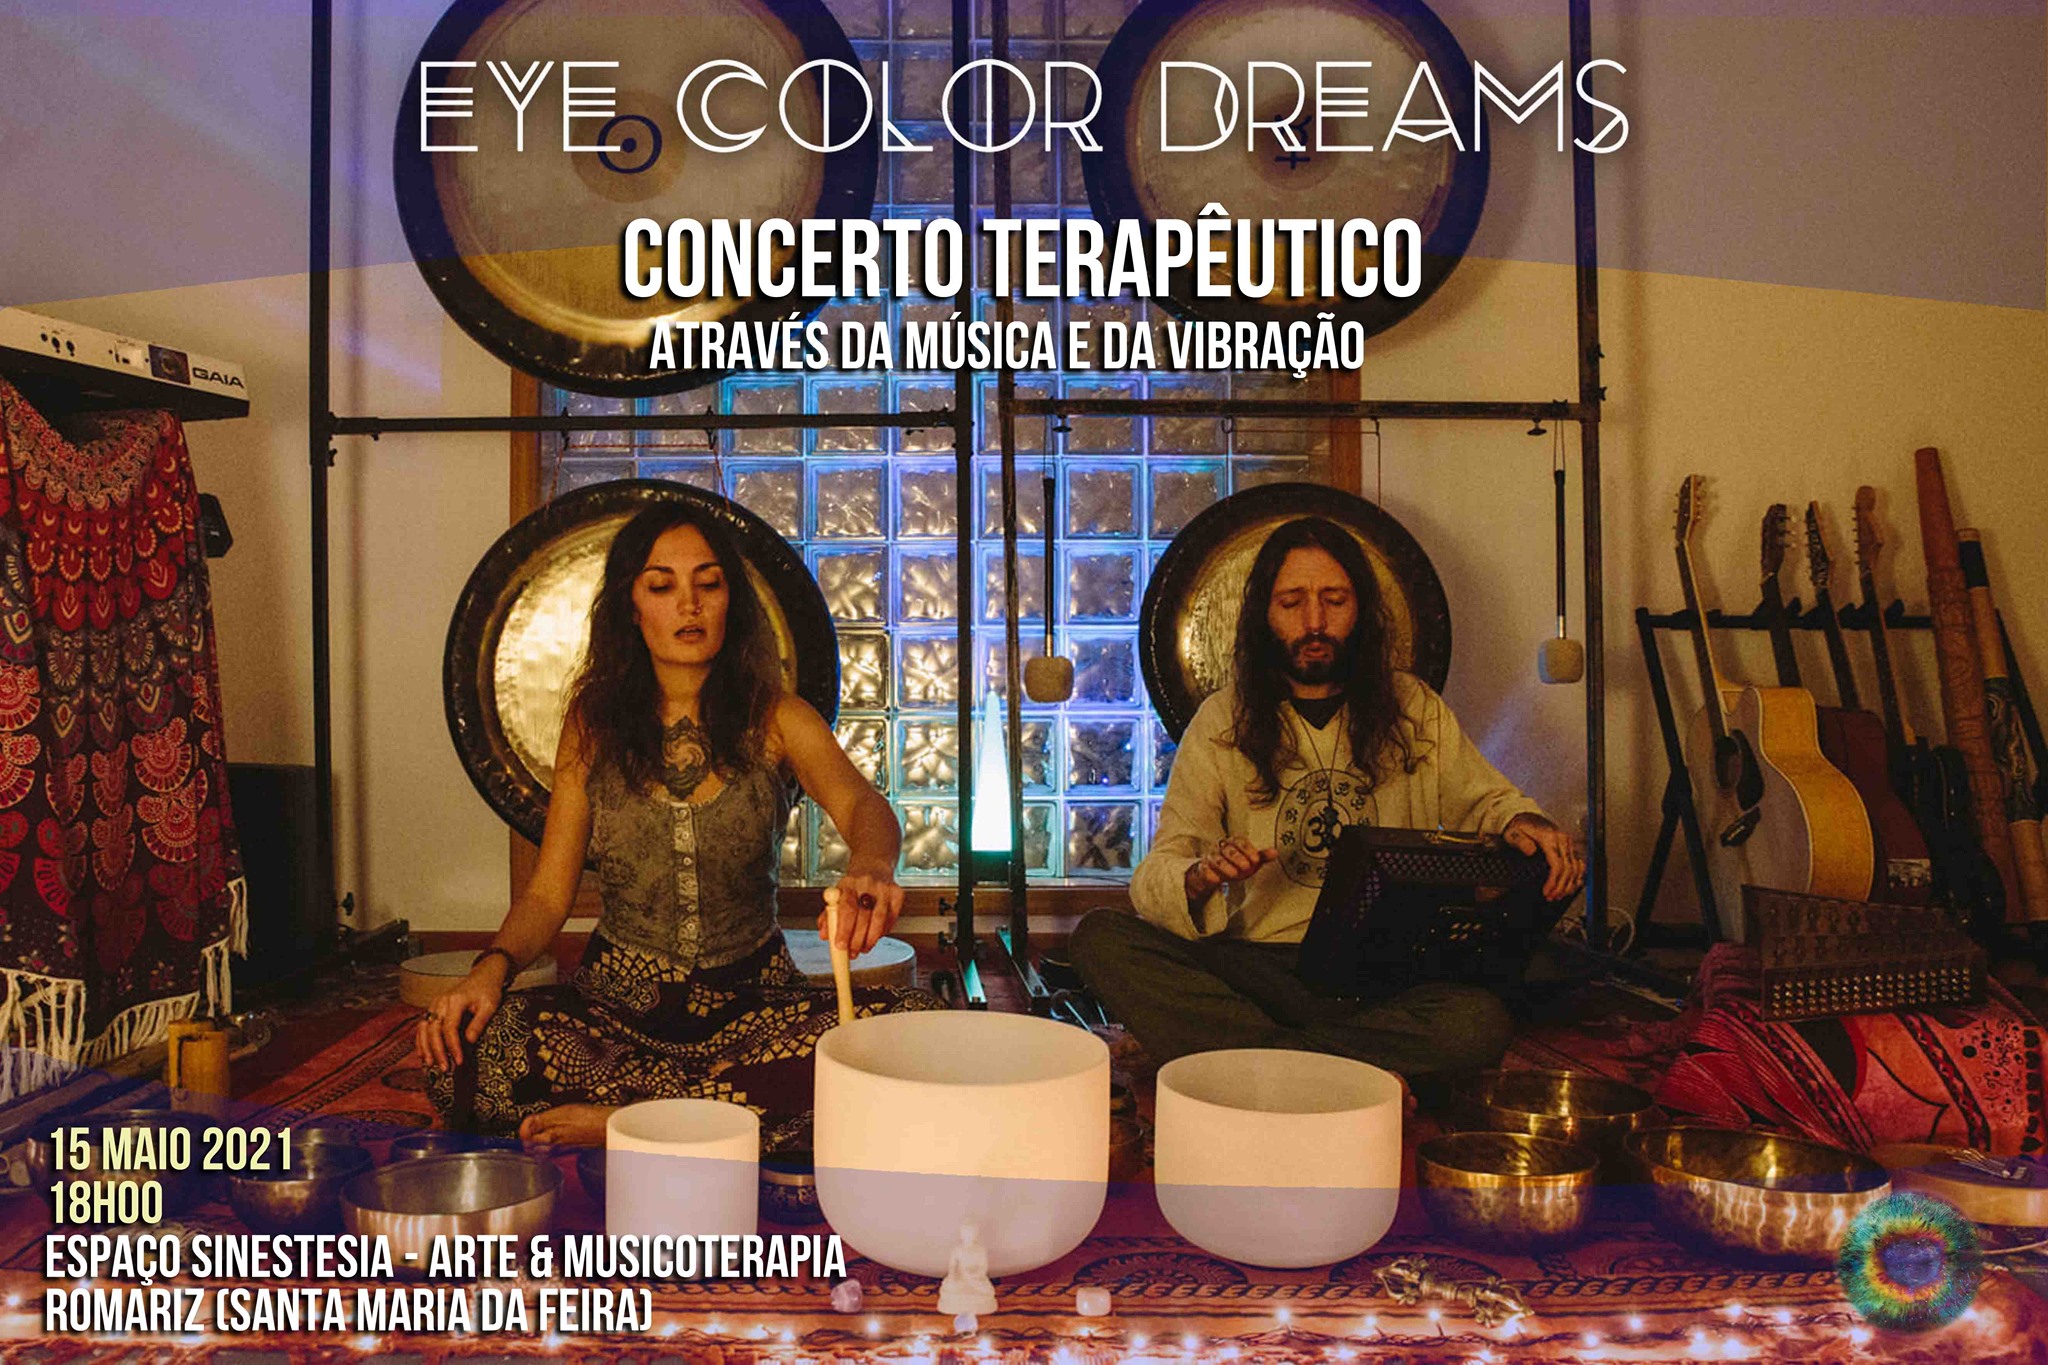 Concerto Terapêutico - Eye Color Dreams